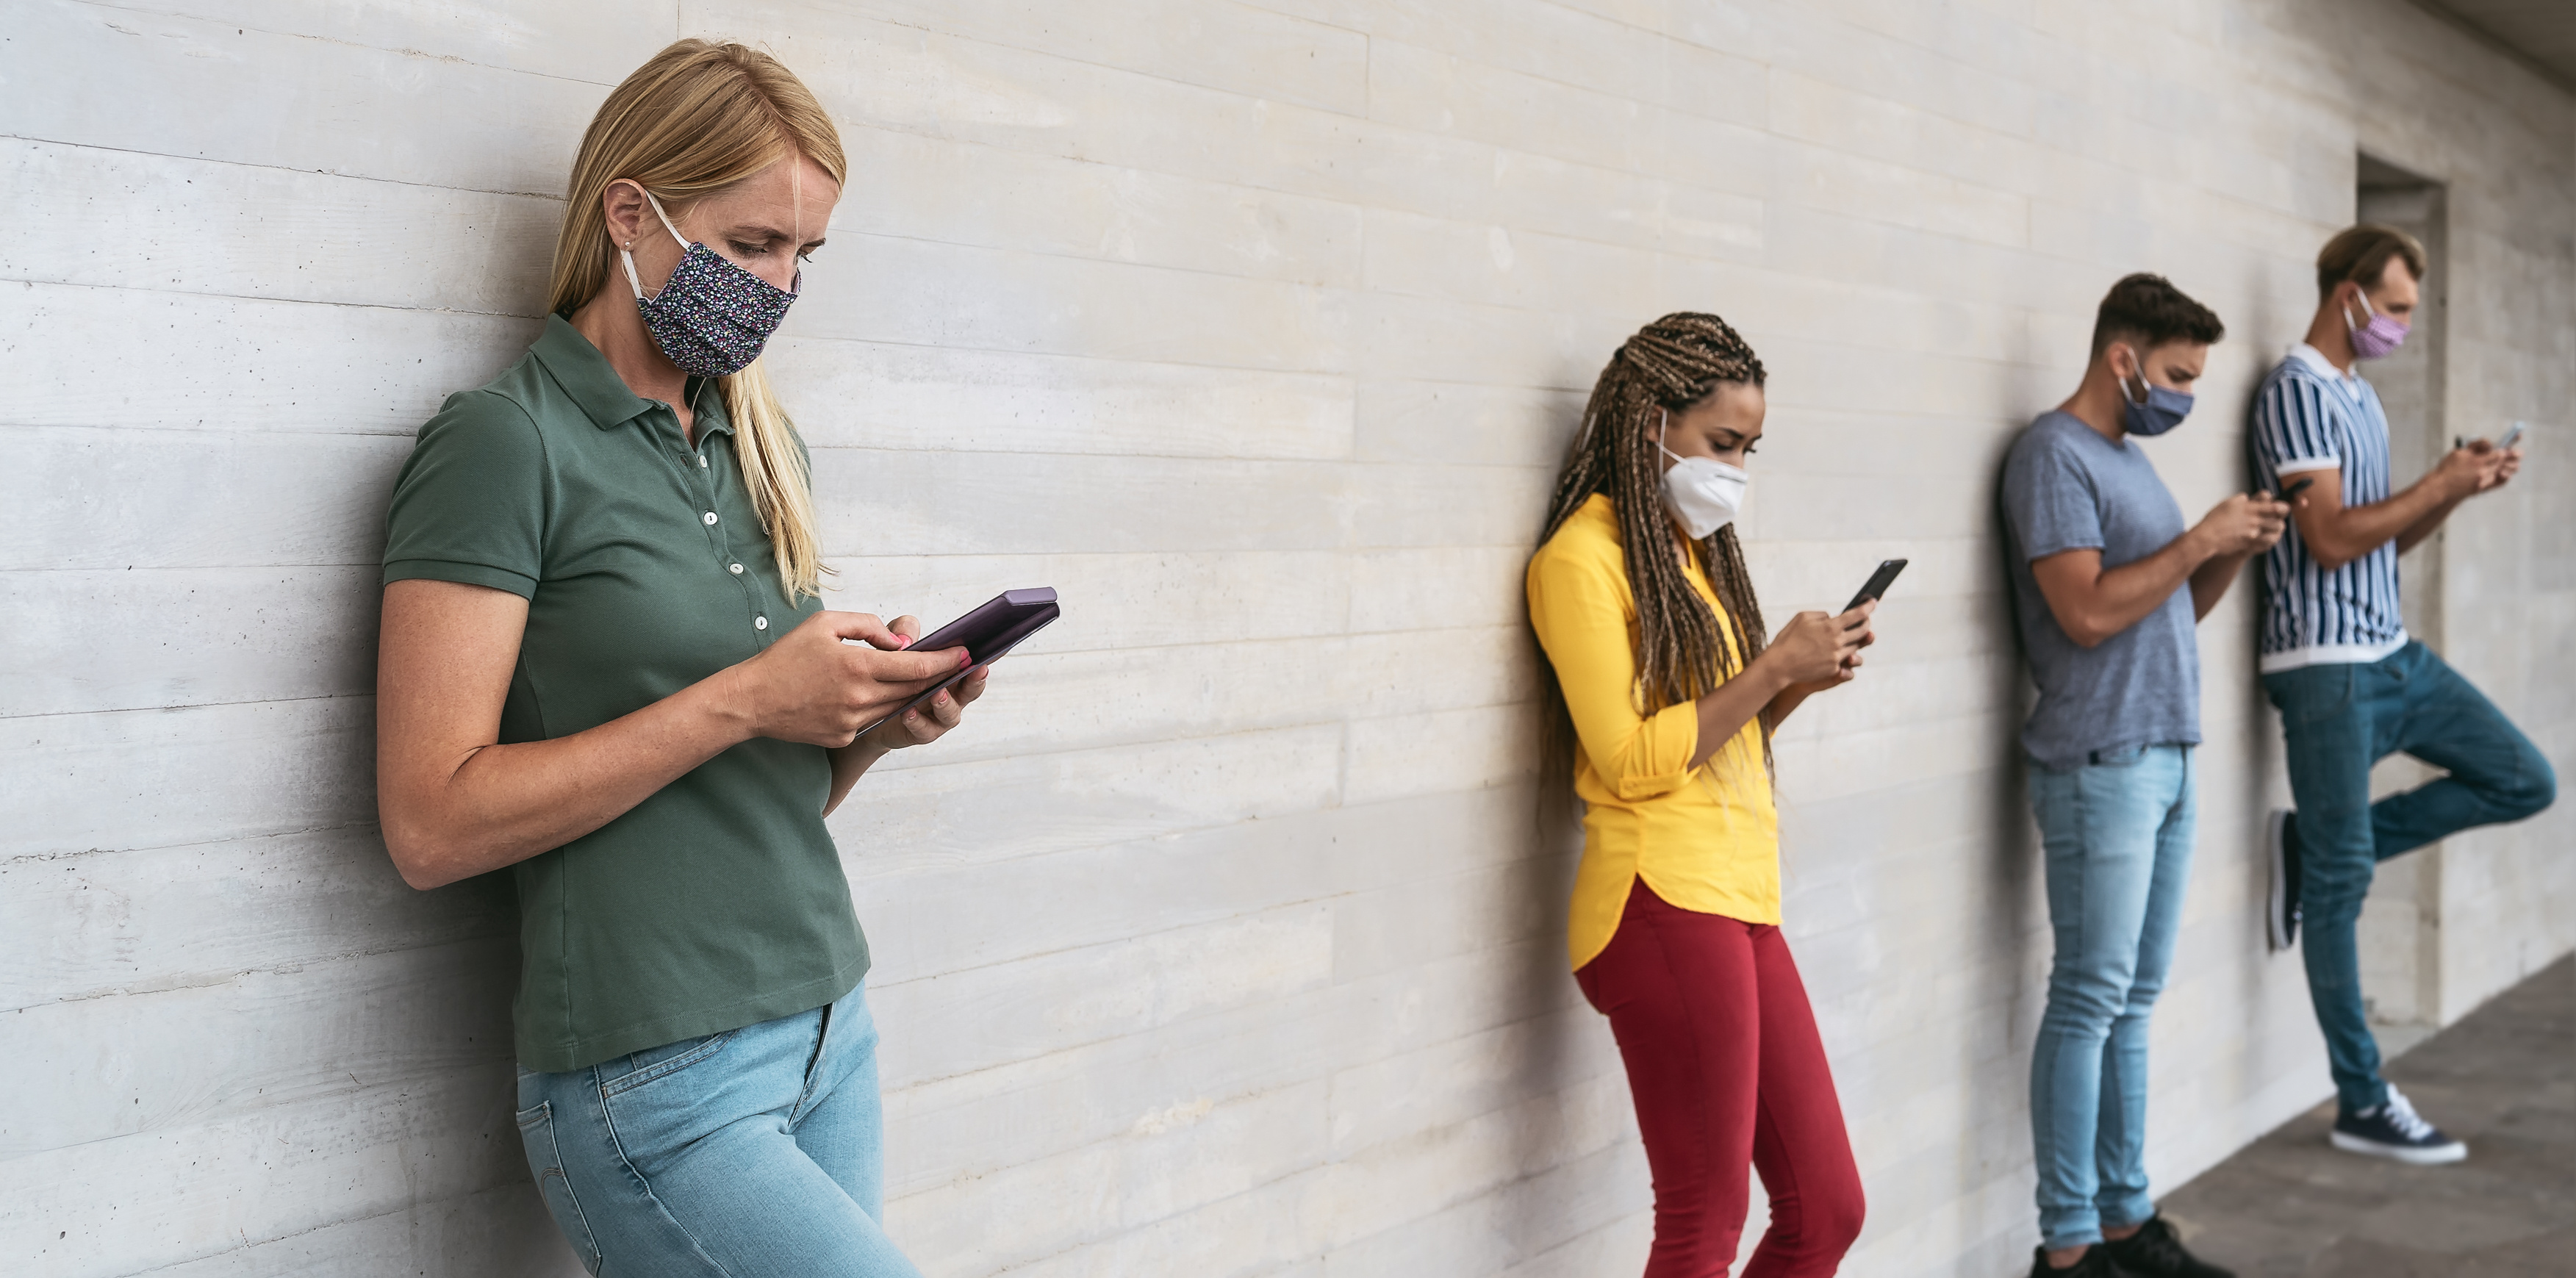 Vier Personen mit Masken und Smartphones lehnen an der Wand und betrachten die Smartphones.